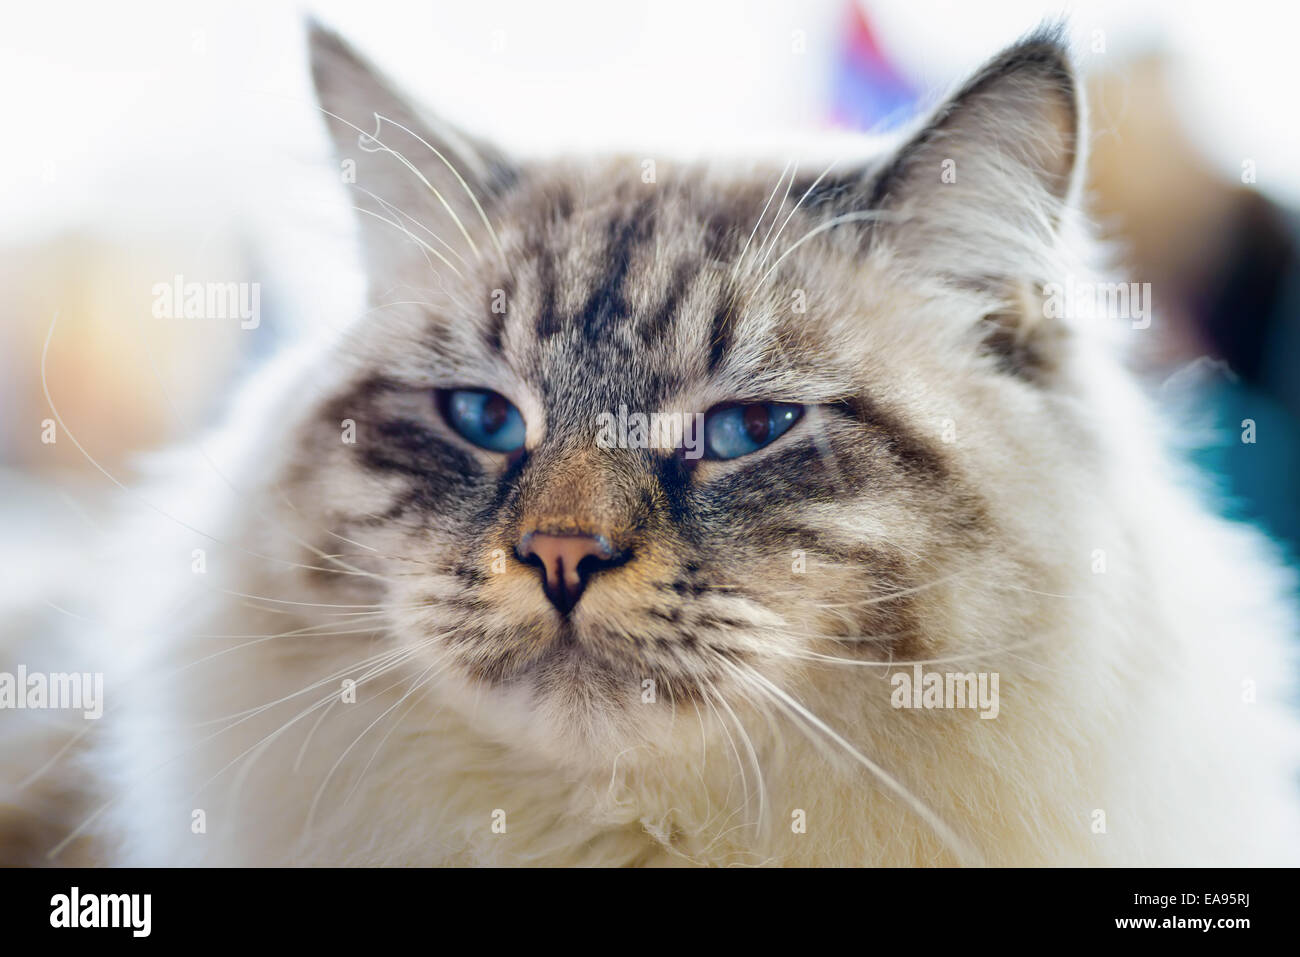 Tiere: close-up Portrait von blauäugigen Lumpenproletariat Katze, der Hintergrund jedoch unscharf Stockfoto